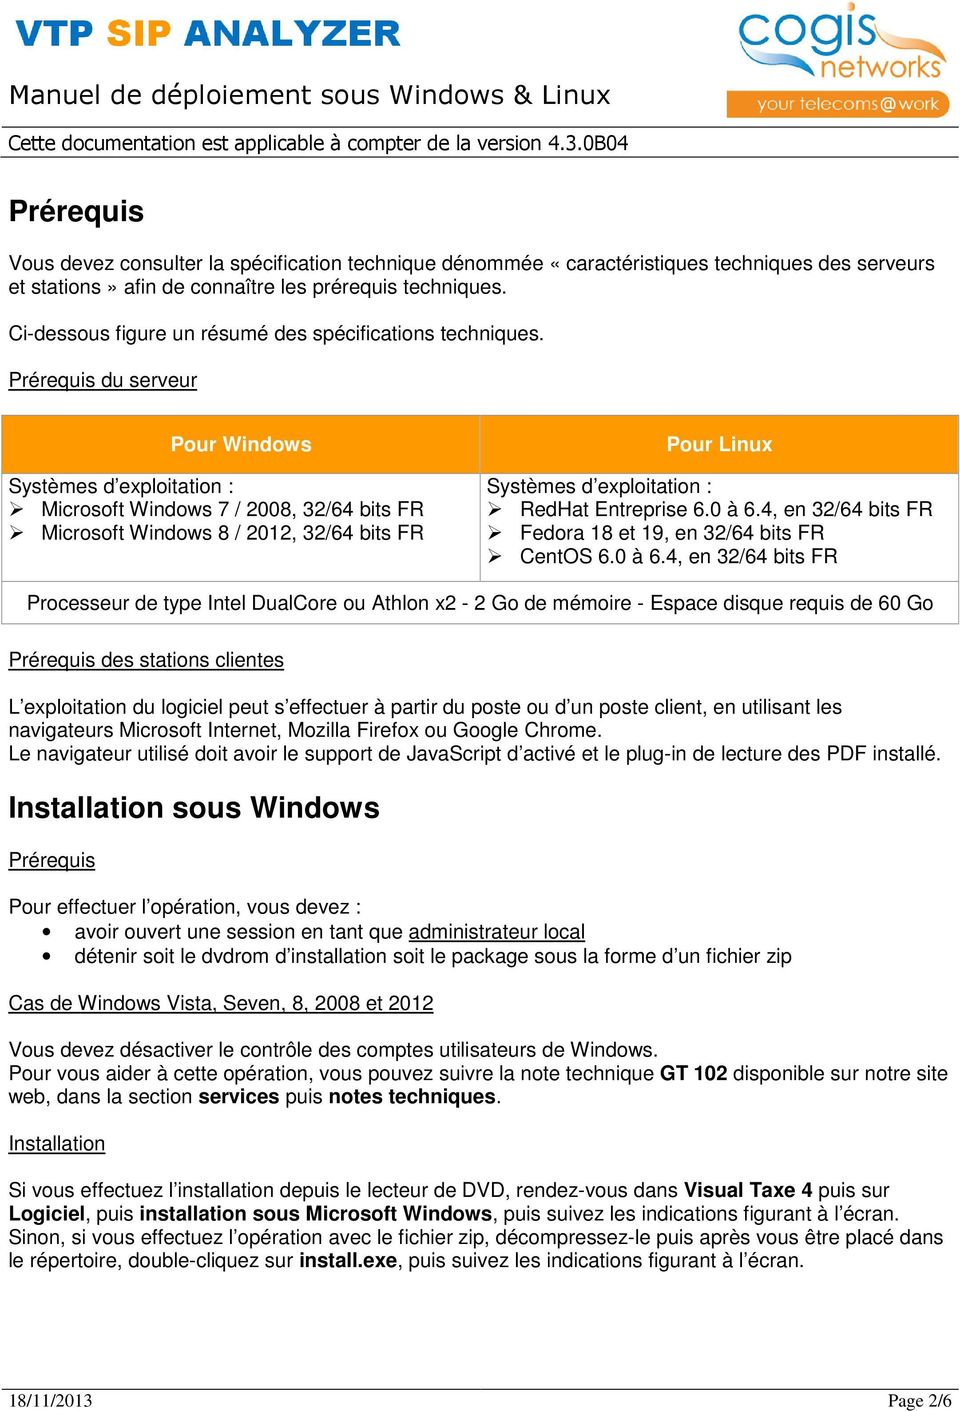 Prérequis du serveur Pour Windows Systèmes d exploitation : Microsoft Windows 7 / 2008, 32/64 bits FR Microsoft Windows 8 / 2012, 32/64 bits FR Pour Linux Systèmes d exploitation : RedHat Entreprise